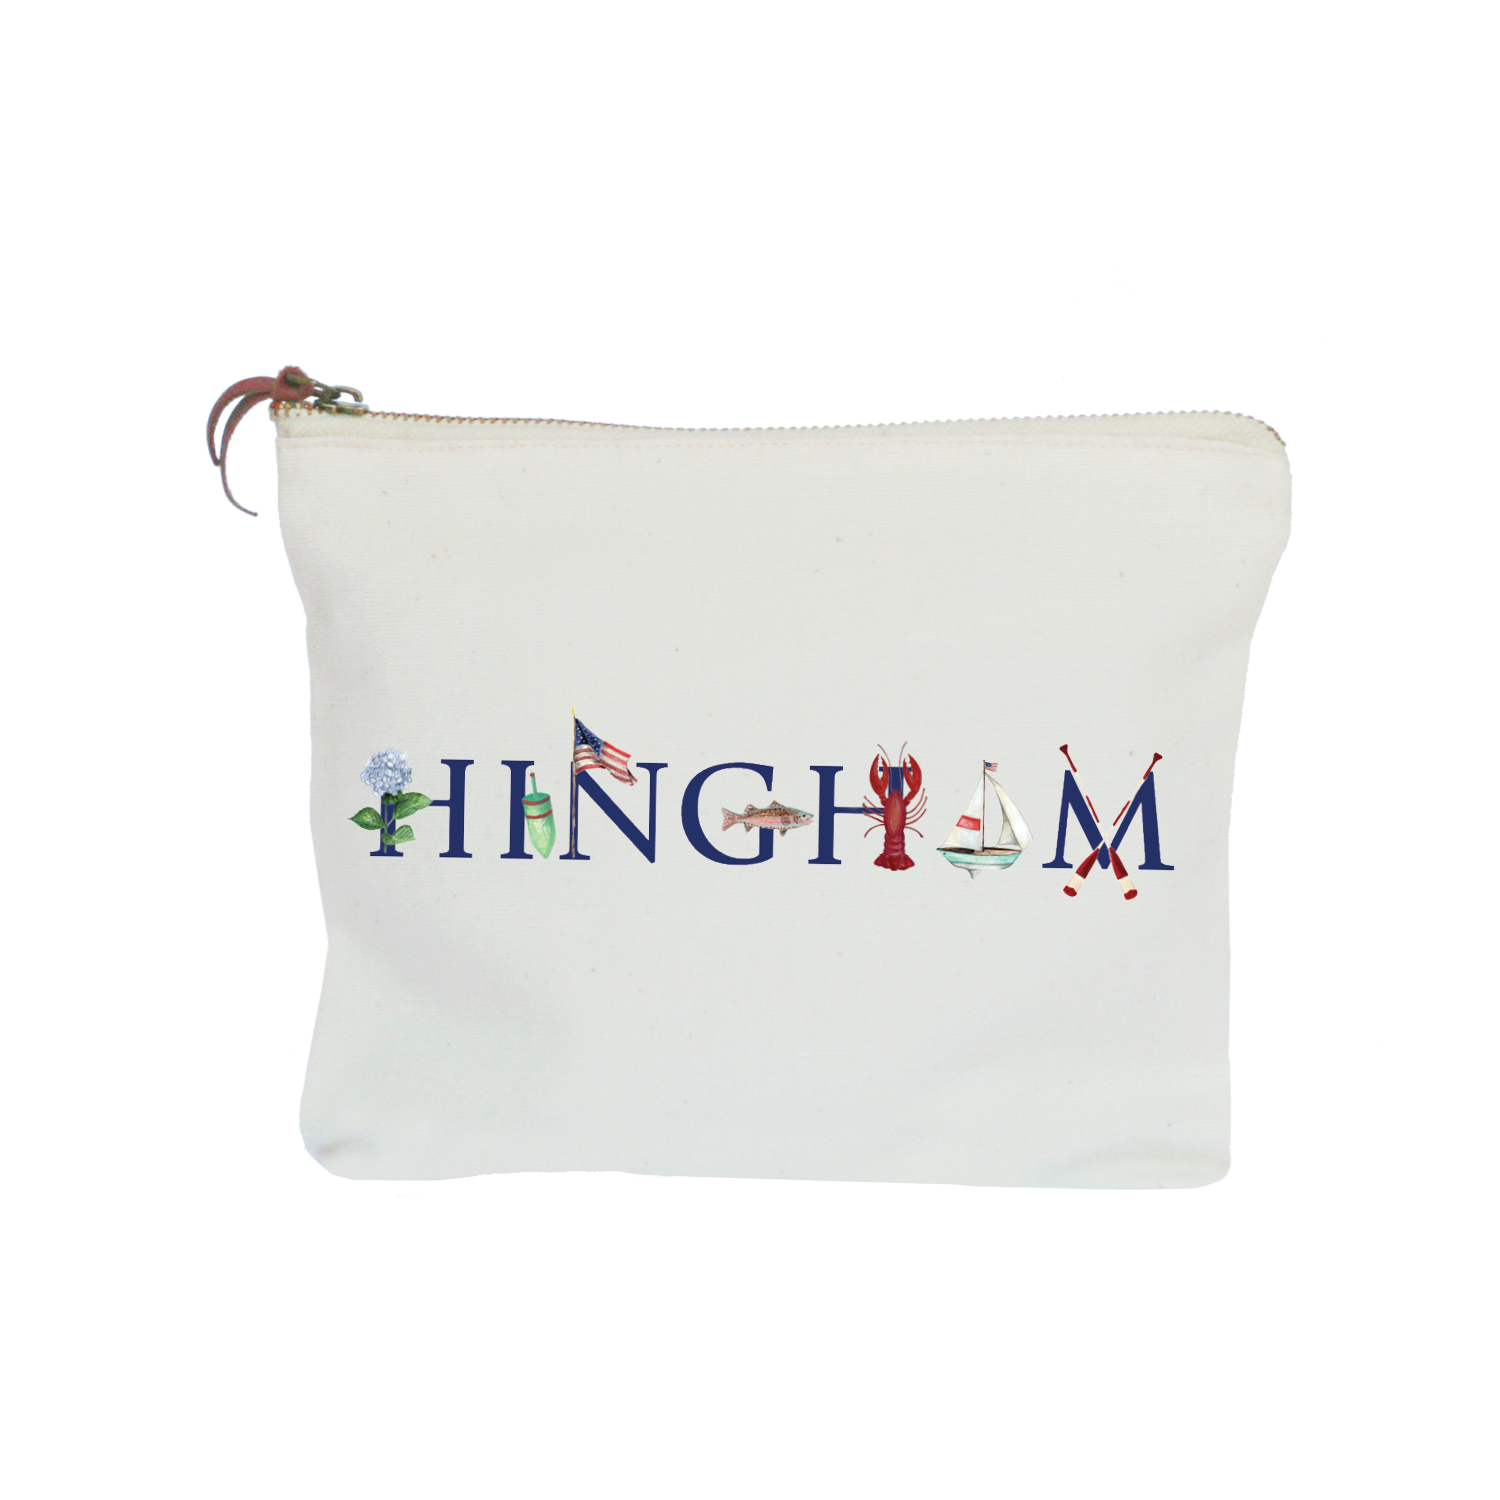 Hingham zipper pouch